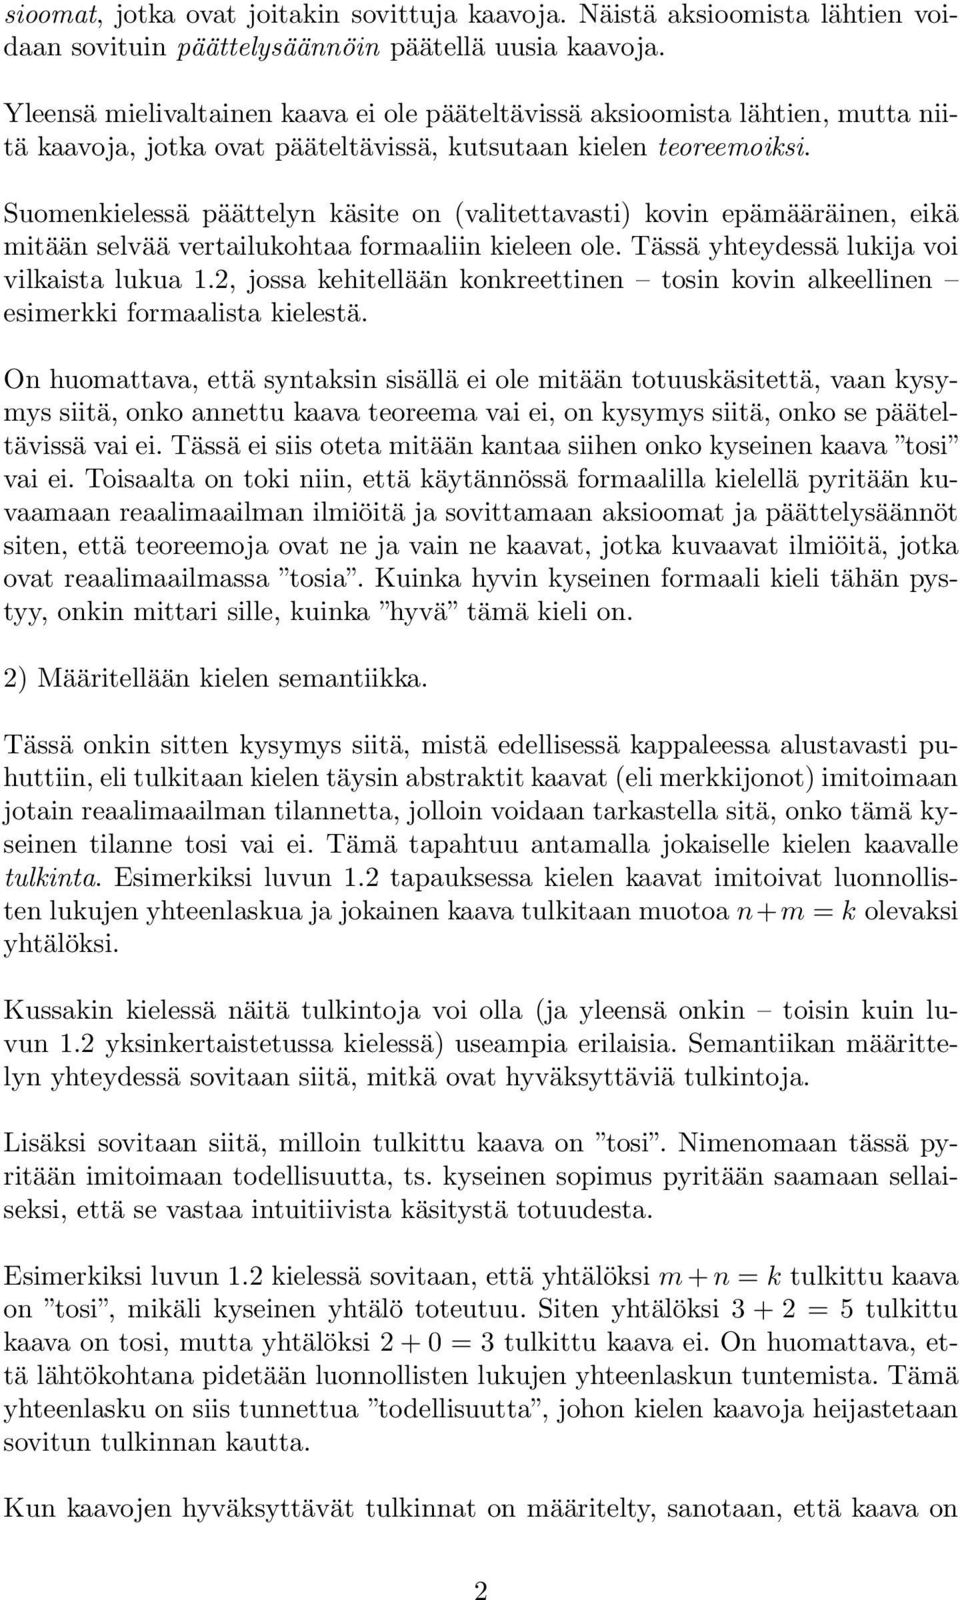 Suomenkielessä päättelyn käsite on (valitettavasti) kovin epämääräinen, eikä mitään selvää vertailukohtaa formaaliin kieleen ole. Tässä yhteydessä lukija voi vilkaista lukua 1.